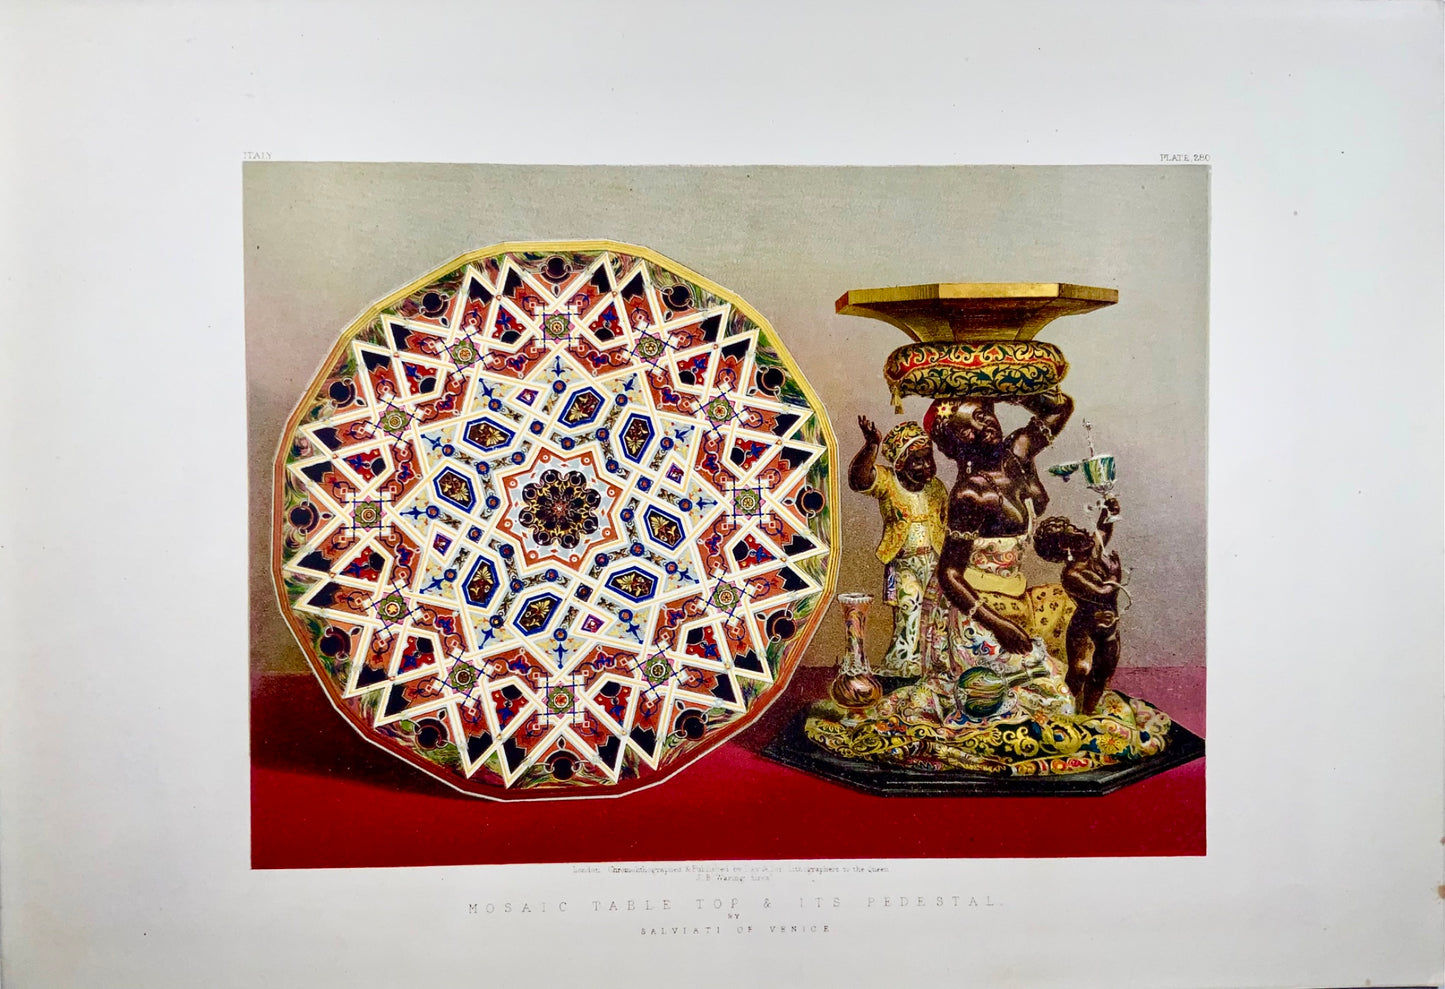 1862 Tavolo in mosaico, piedistallo, Salviati, Waring, foglio grande, cromolitografia, arte, design